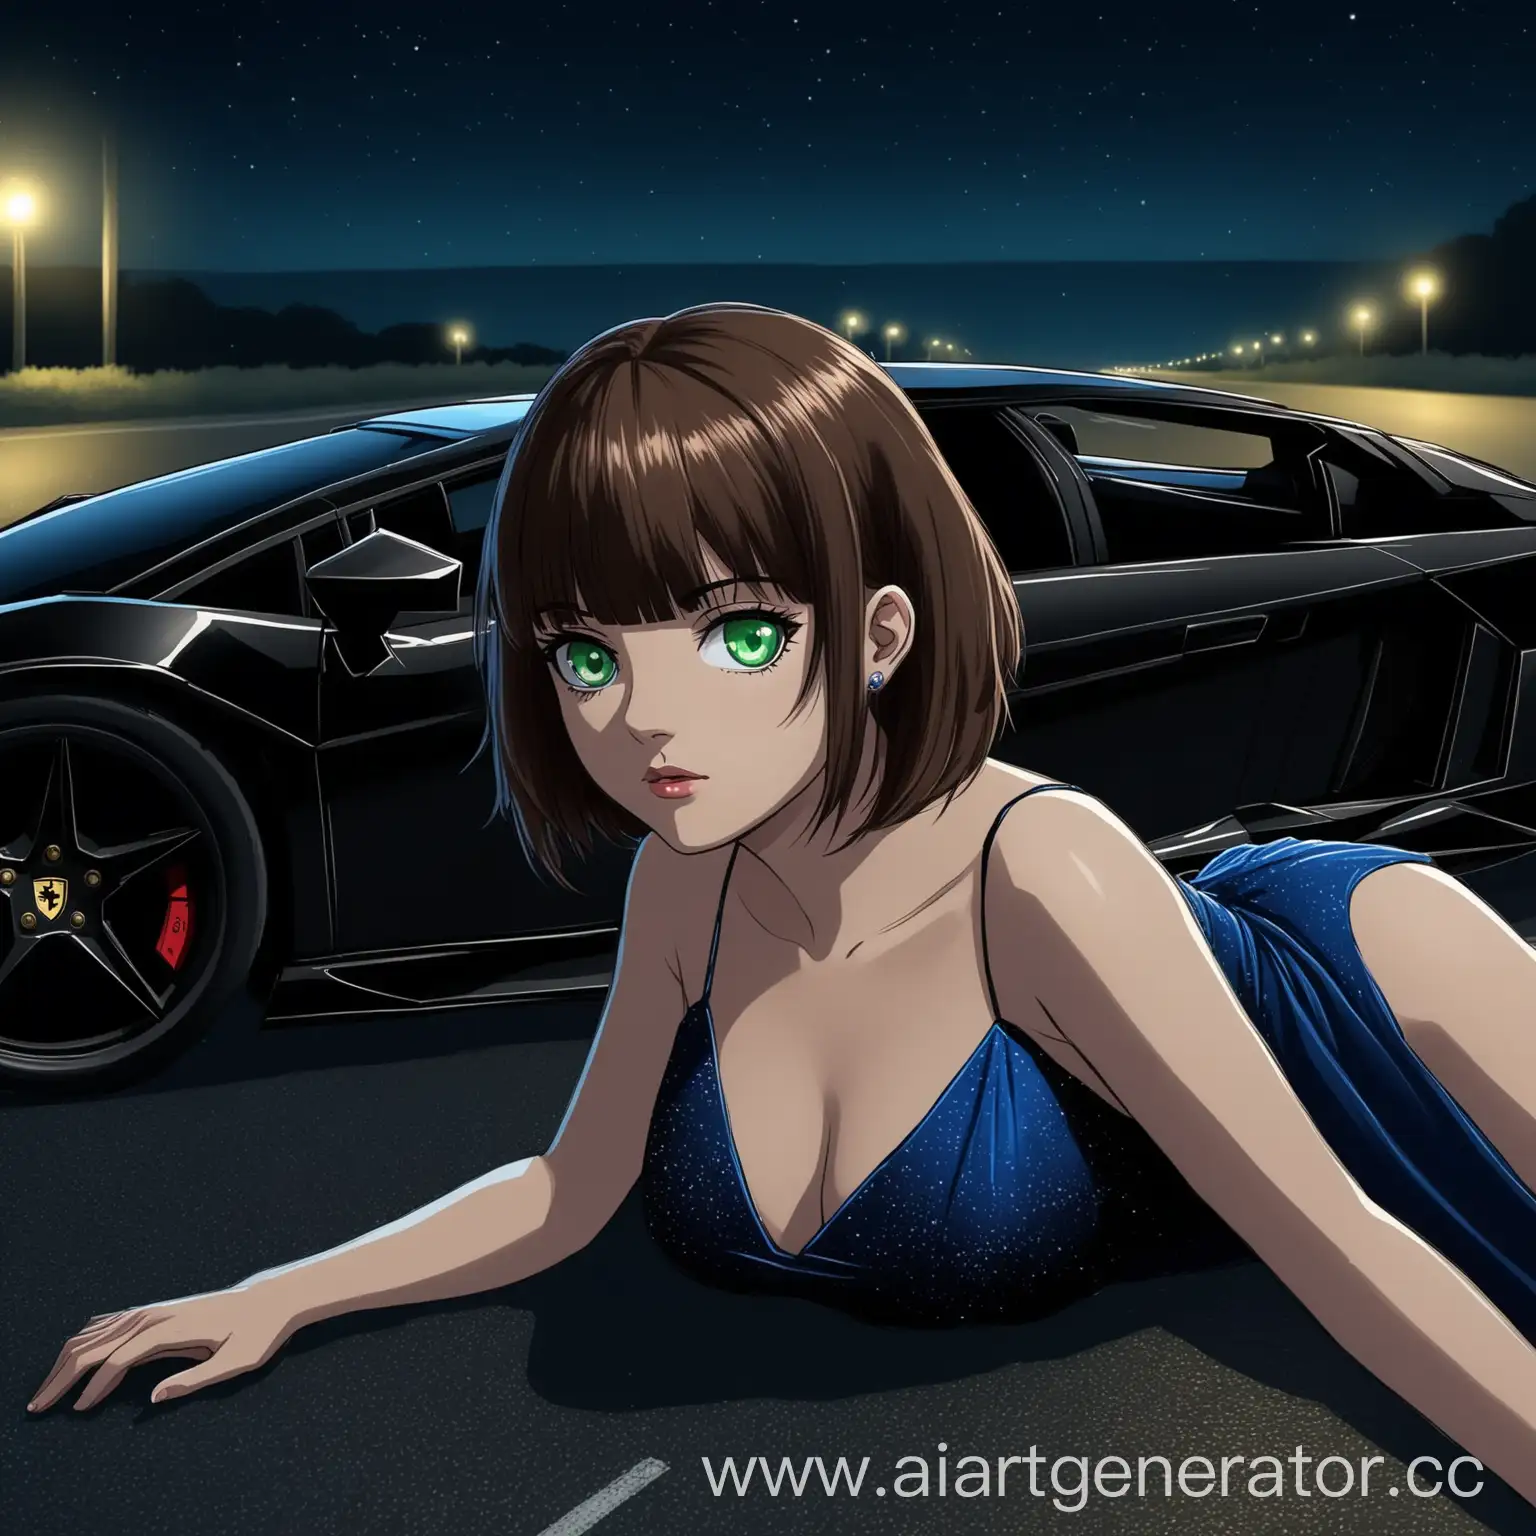 Aria Roscente está tumbada en la carretera con Lamborghini negro por la noche con una atmósfera pesada en un vestido de noche corto de color azul con el pelo corto de color castaño y con flequillo y con los ojos verdes